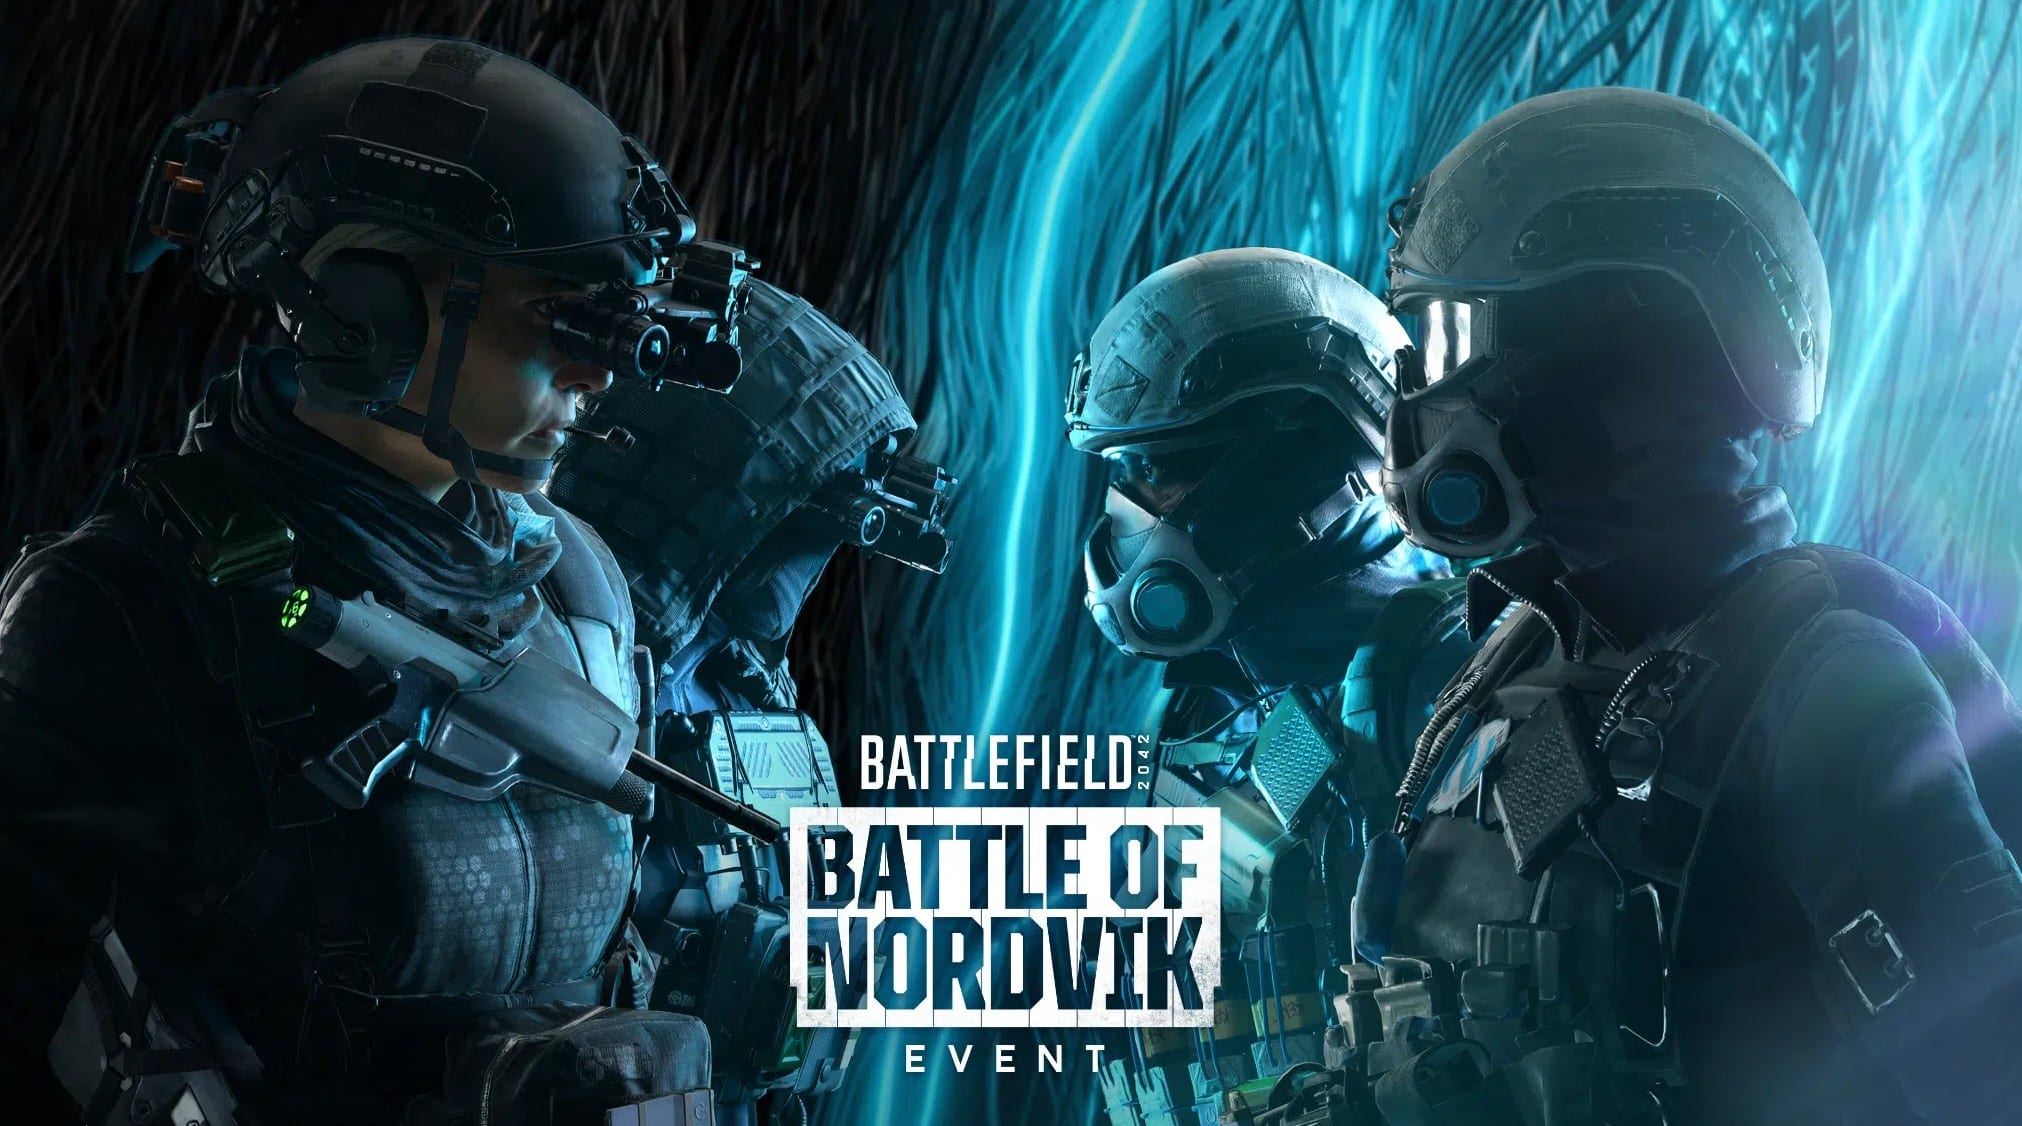 El evento de Battlefield 2042 La Batalla de Nordvik llegará el 20 de diciembre, GamersRD